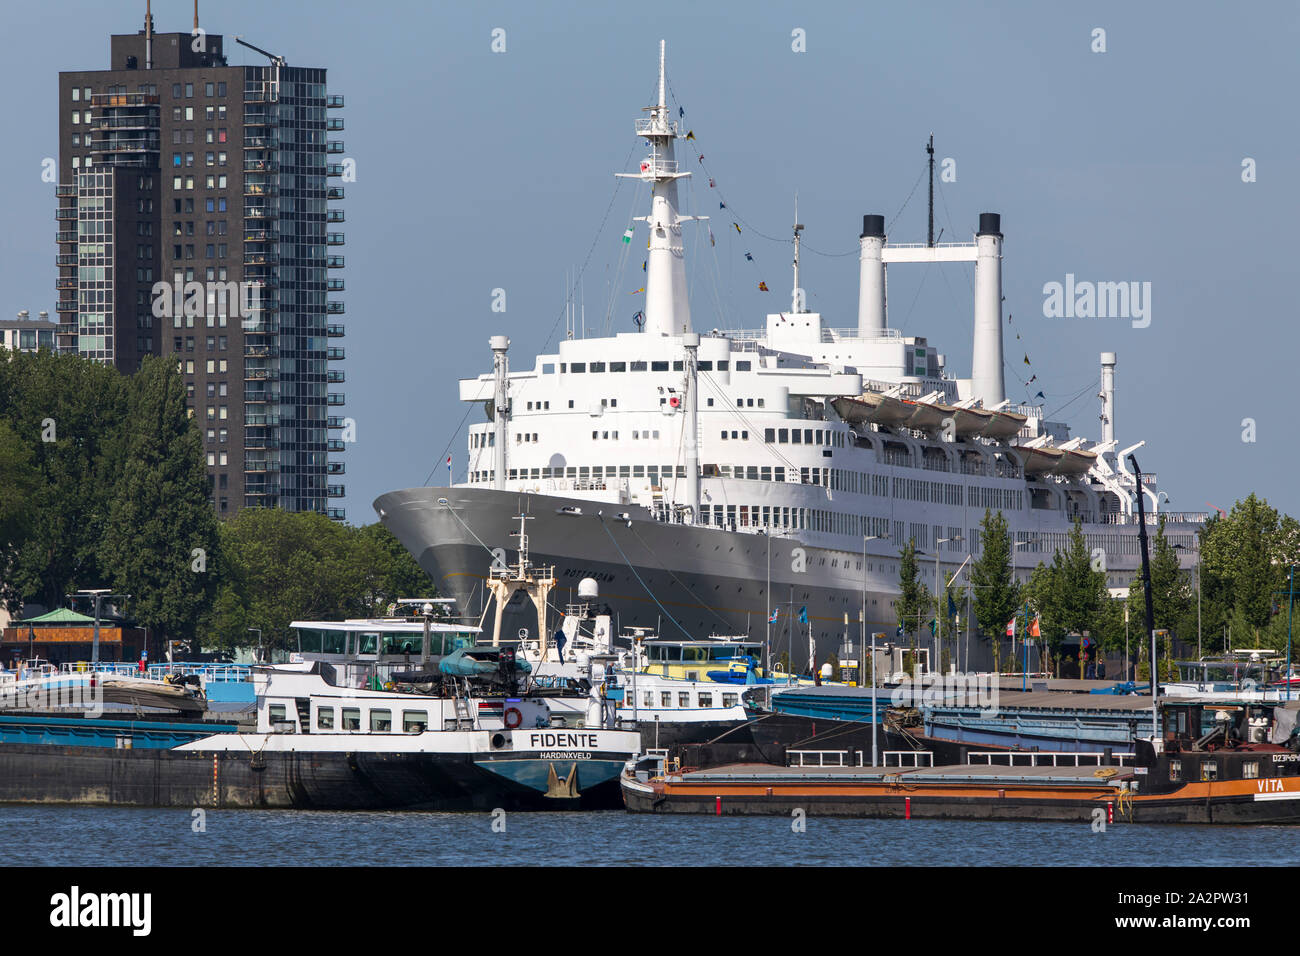 Der Hafen von Rotterdam, Niederlande, ehemalige Passagierschiff, die holland-amerika-Lijn, SS Rotterdam, liegt, wie ein Hotel Schiff in den Hafen, Stockfoto